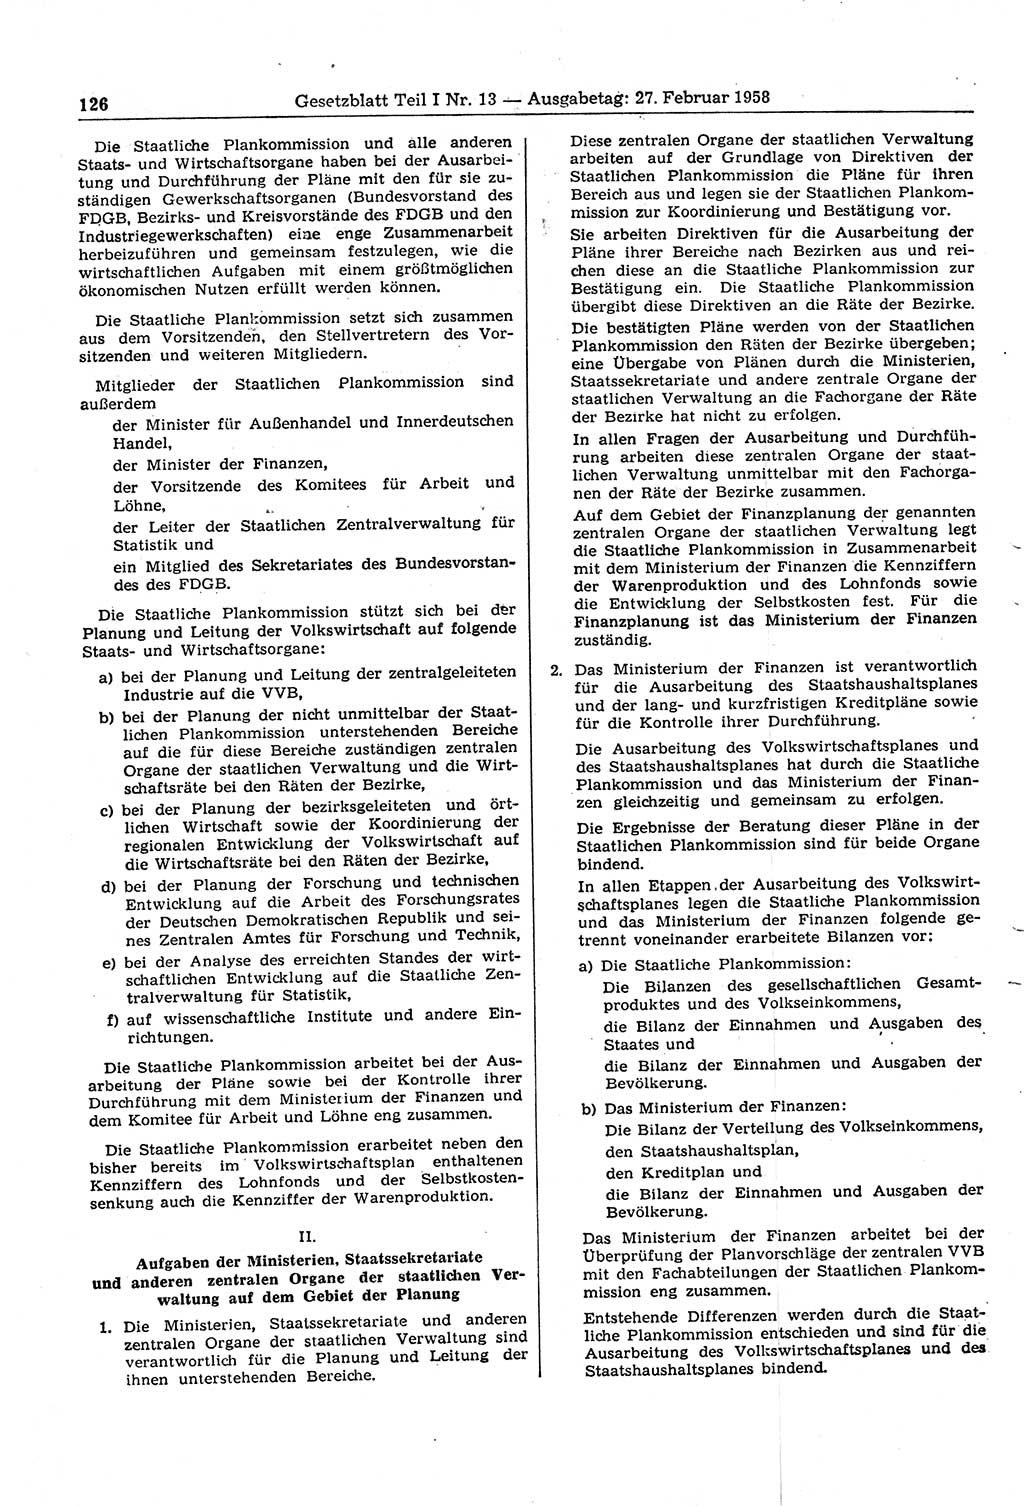 Gesetzblatt (GBl.) der Deutschen Demokratischen Republik (DDR) Teil Ⅰ 1958, Seite 126 (GBl. DDR Ⅰ 1958, S. 126)